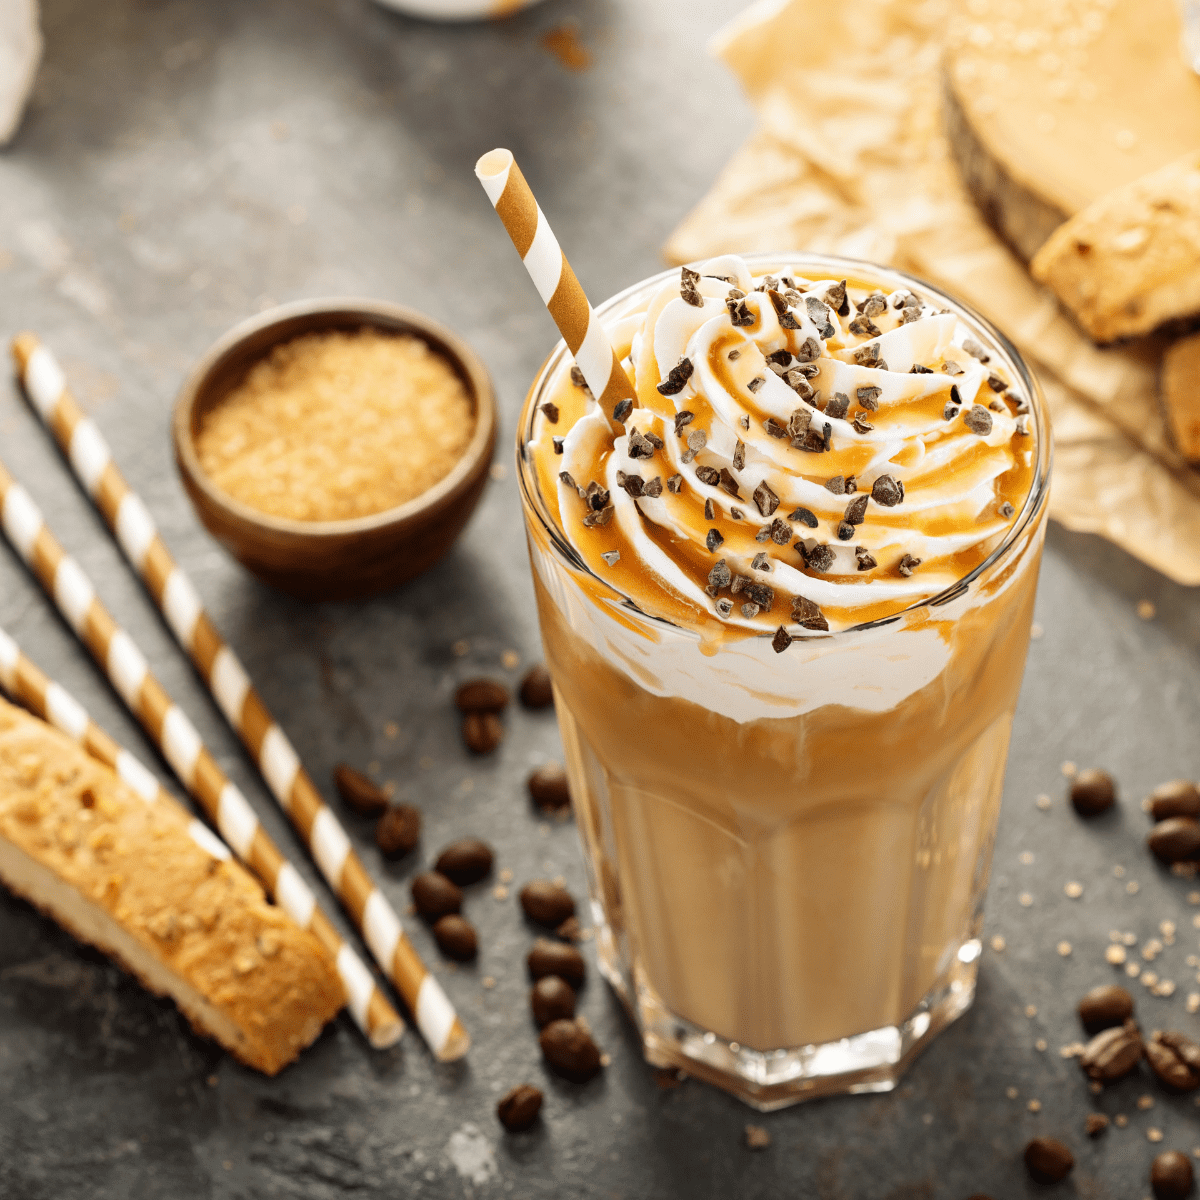 starbucks caramel frappuccino recipe